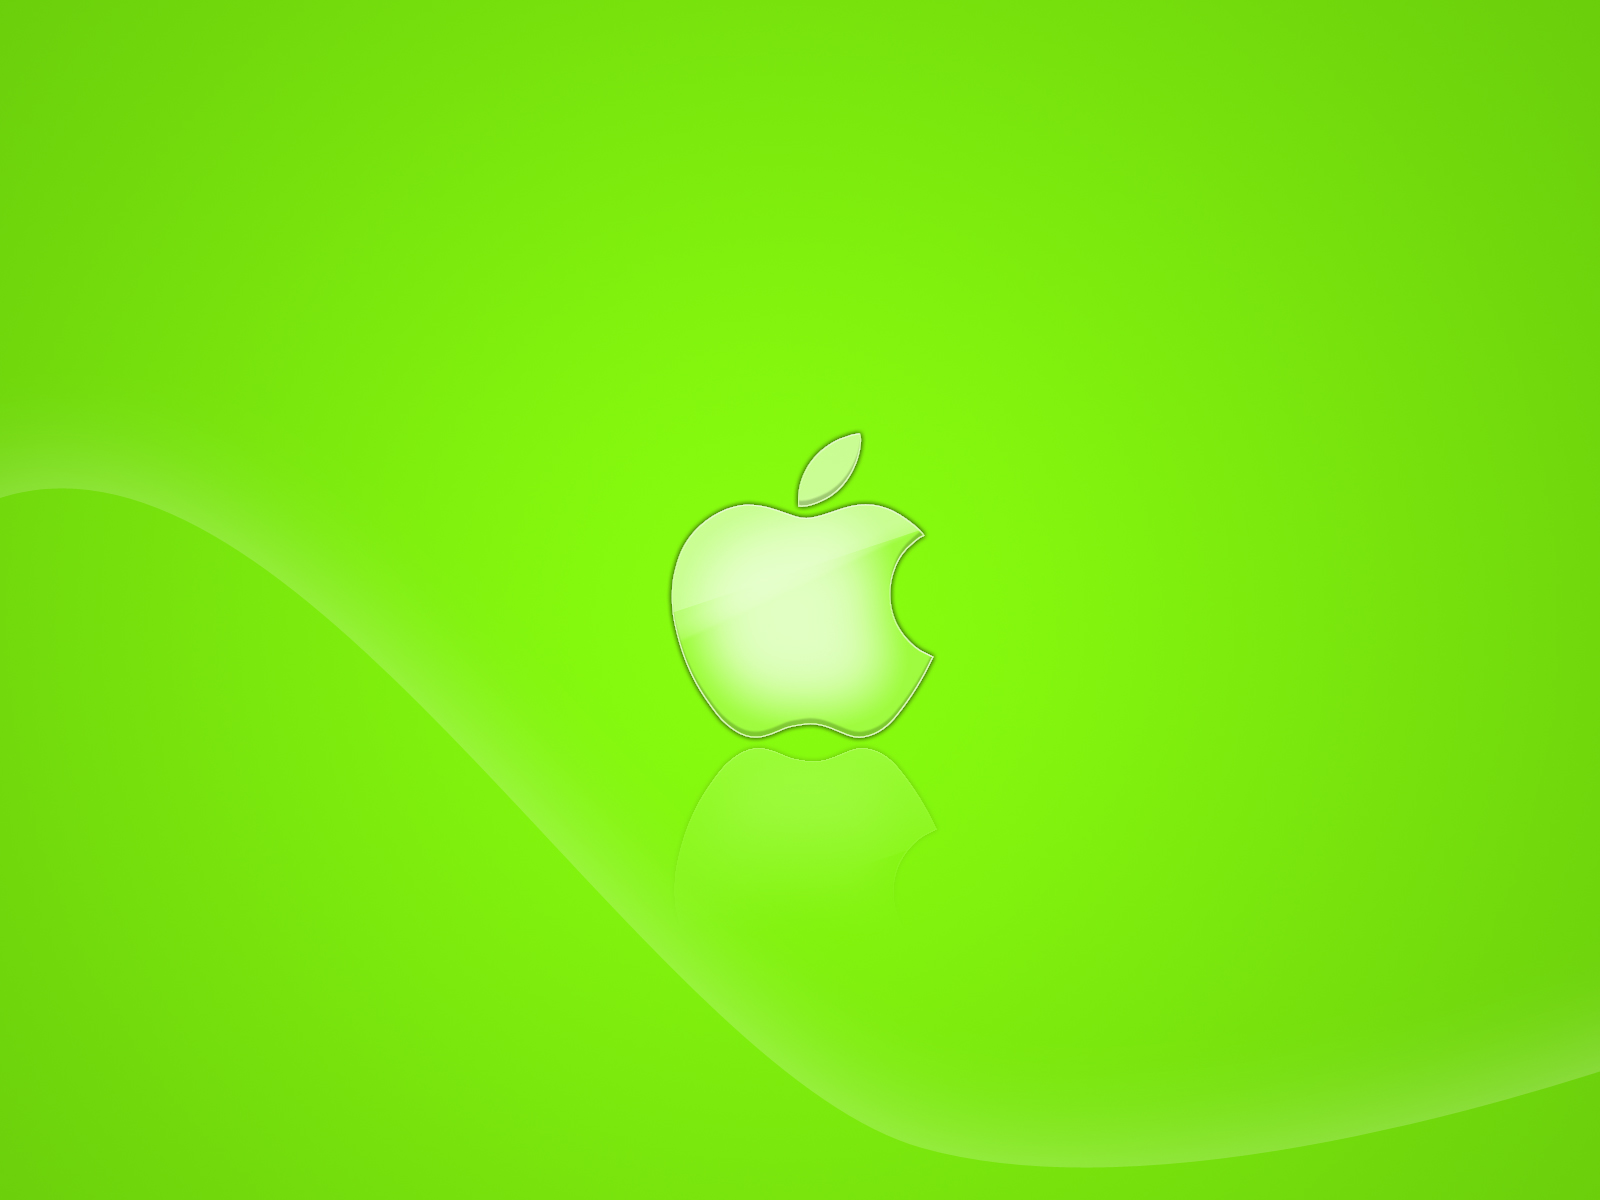 La manzana mordida cada vez es más verde.